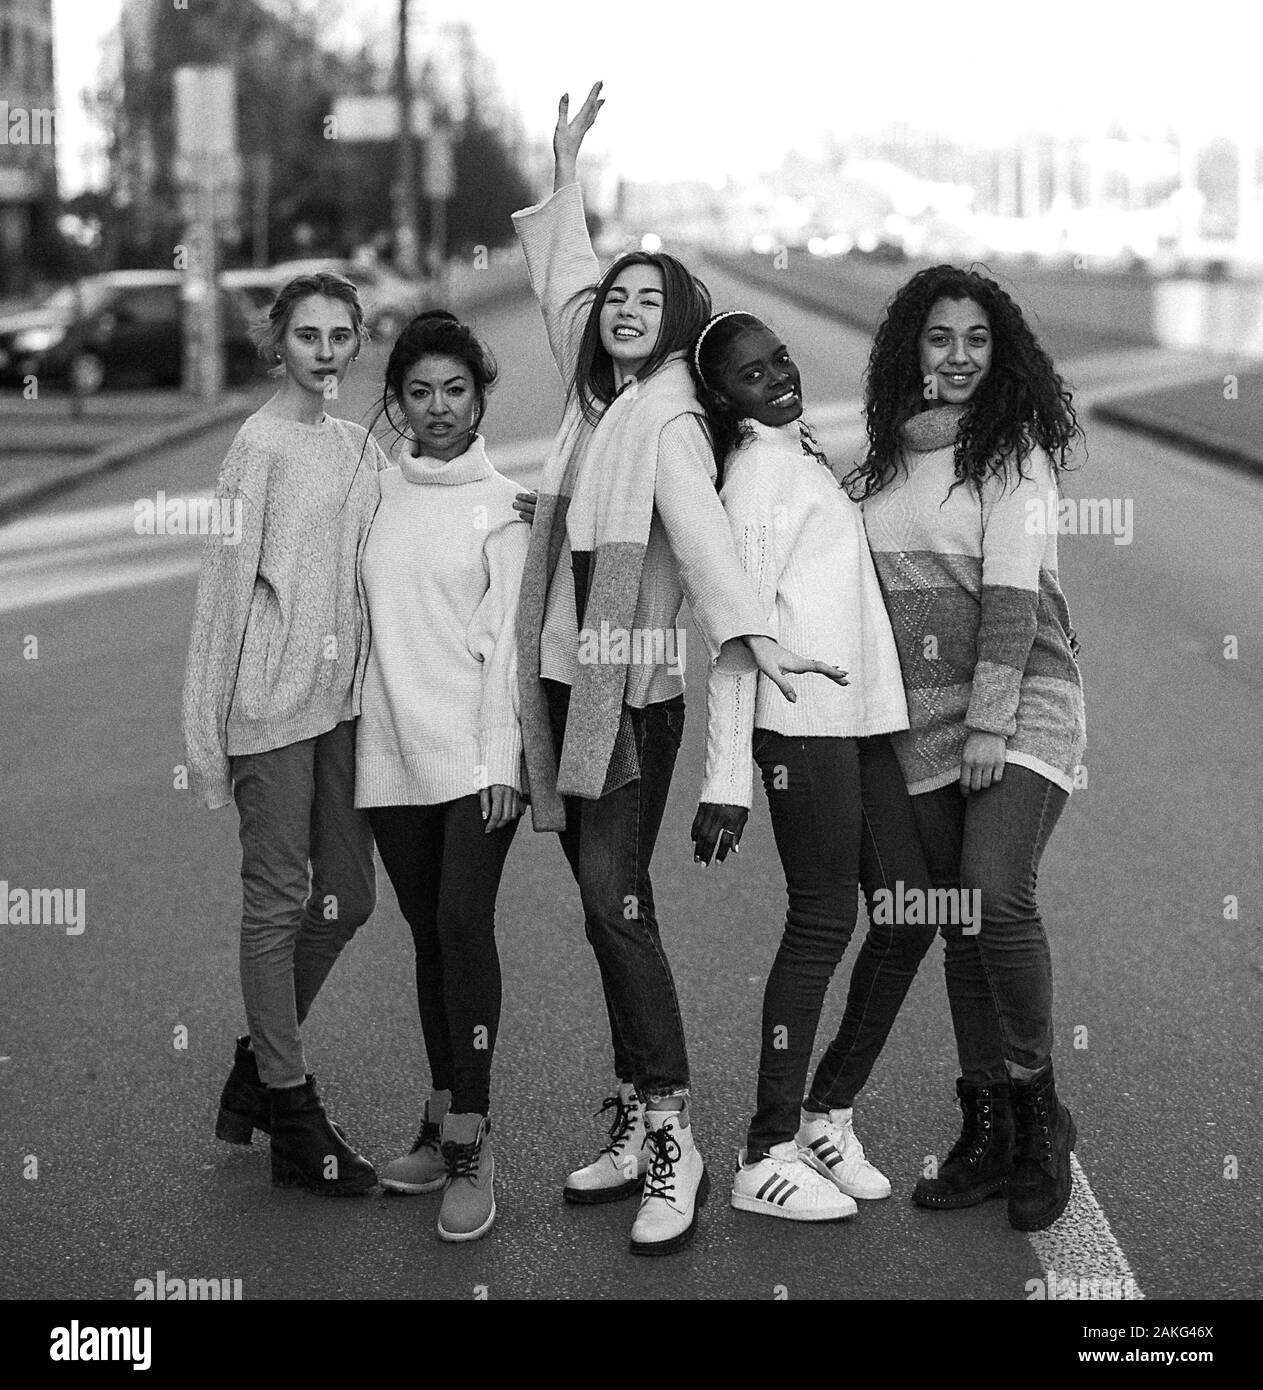 Multiethnische Gruppe von Freunden aus fünf jungen Frauen steht auf Straße der Stadt. Das Konzept von Freundschaft und Einheit zwischen verschiedenen menschlichen Rassen. Schwarz und Stockfoto